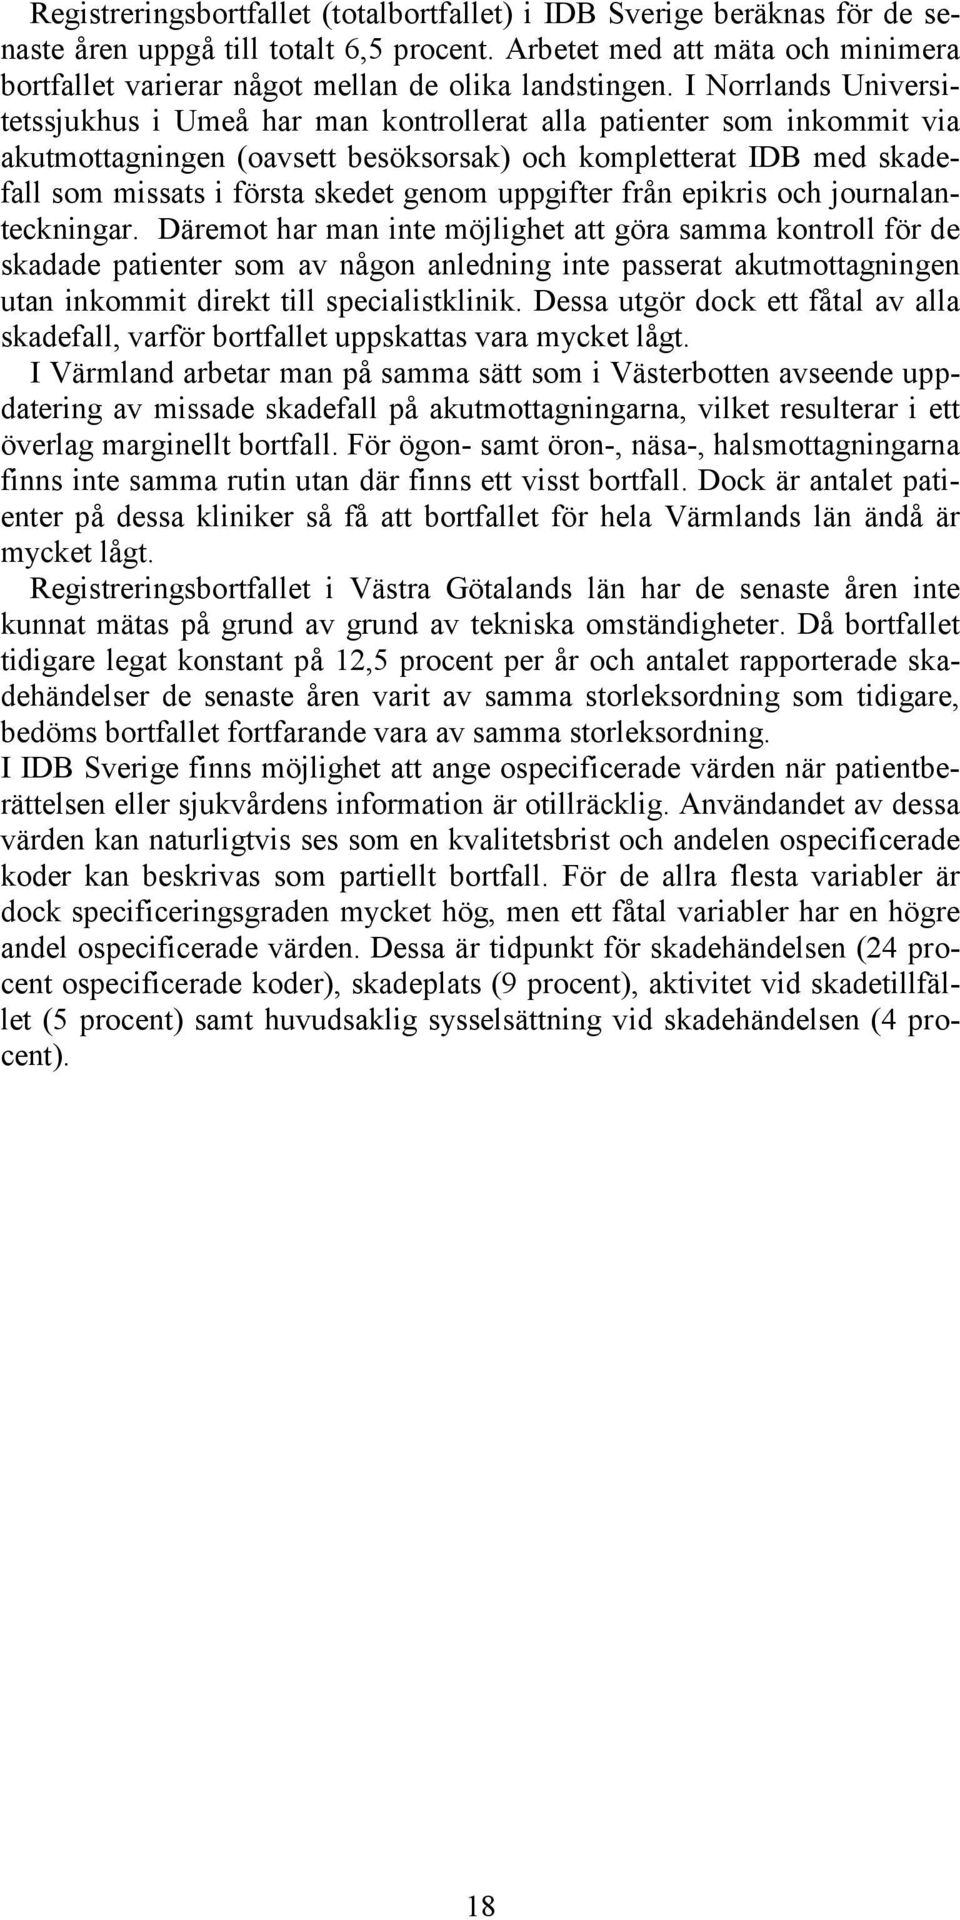 I Norrlands Universitetssjukhus i Umeå har man kontrollerat alla patienter som inkommit via akutmottagningen (oavsett besöksorsak) och kompletterat IDB med skadefall som missats i första skedet genom